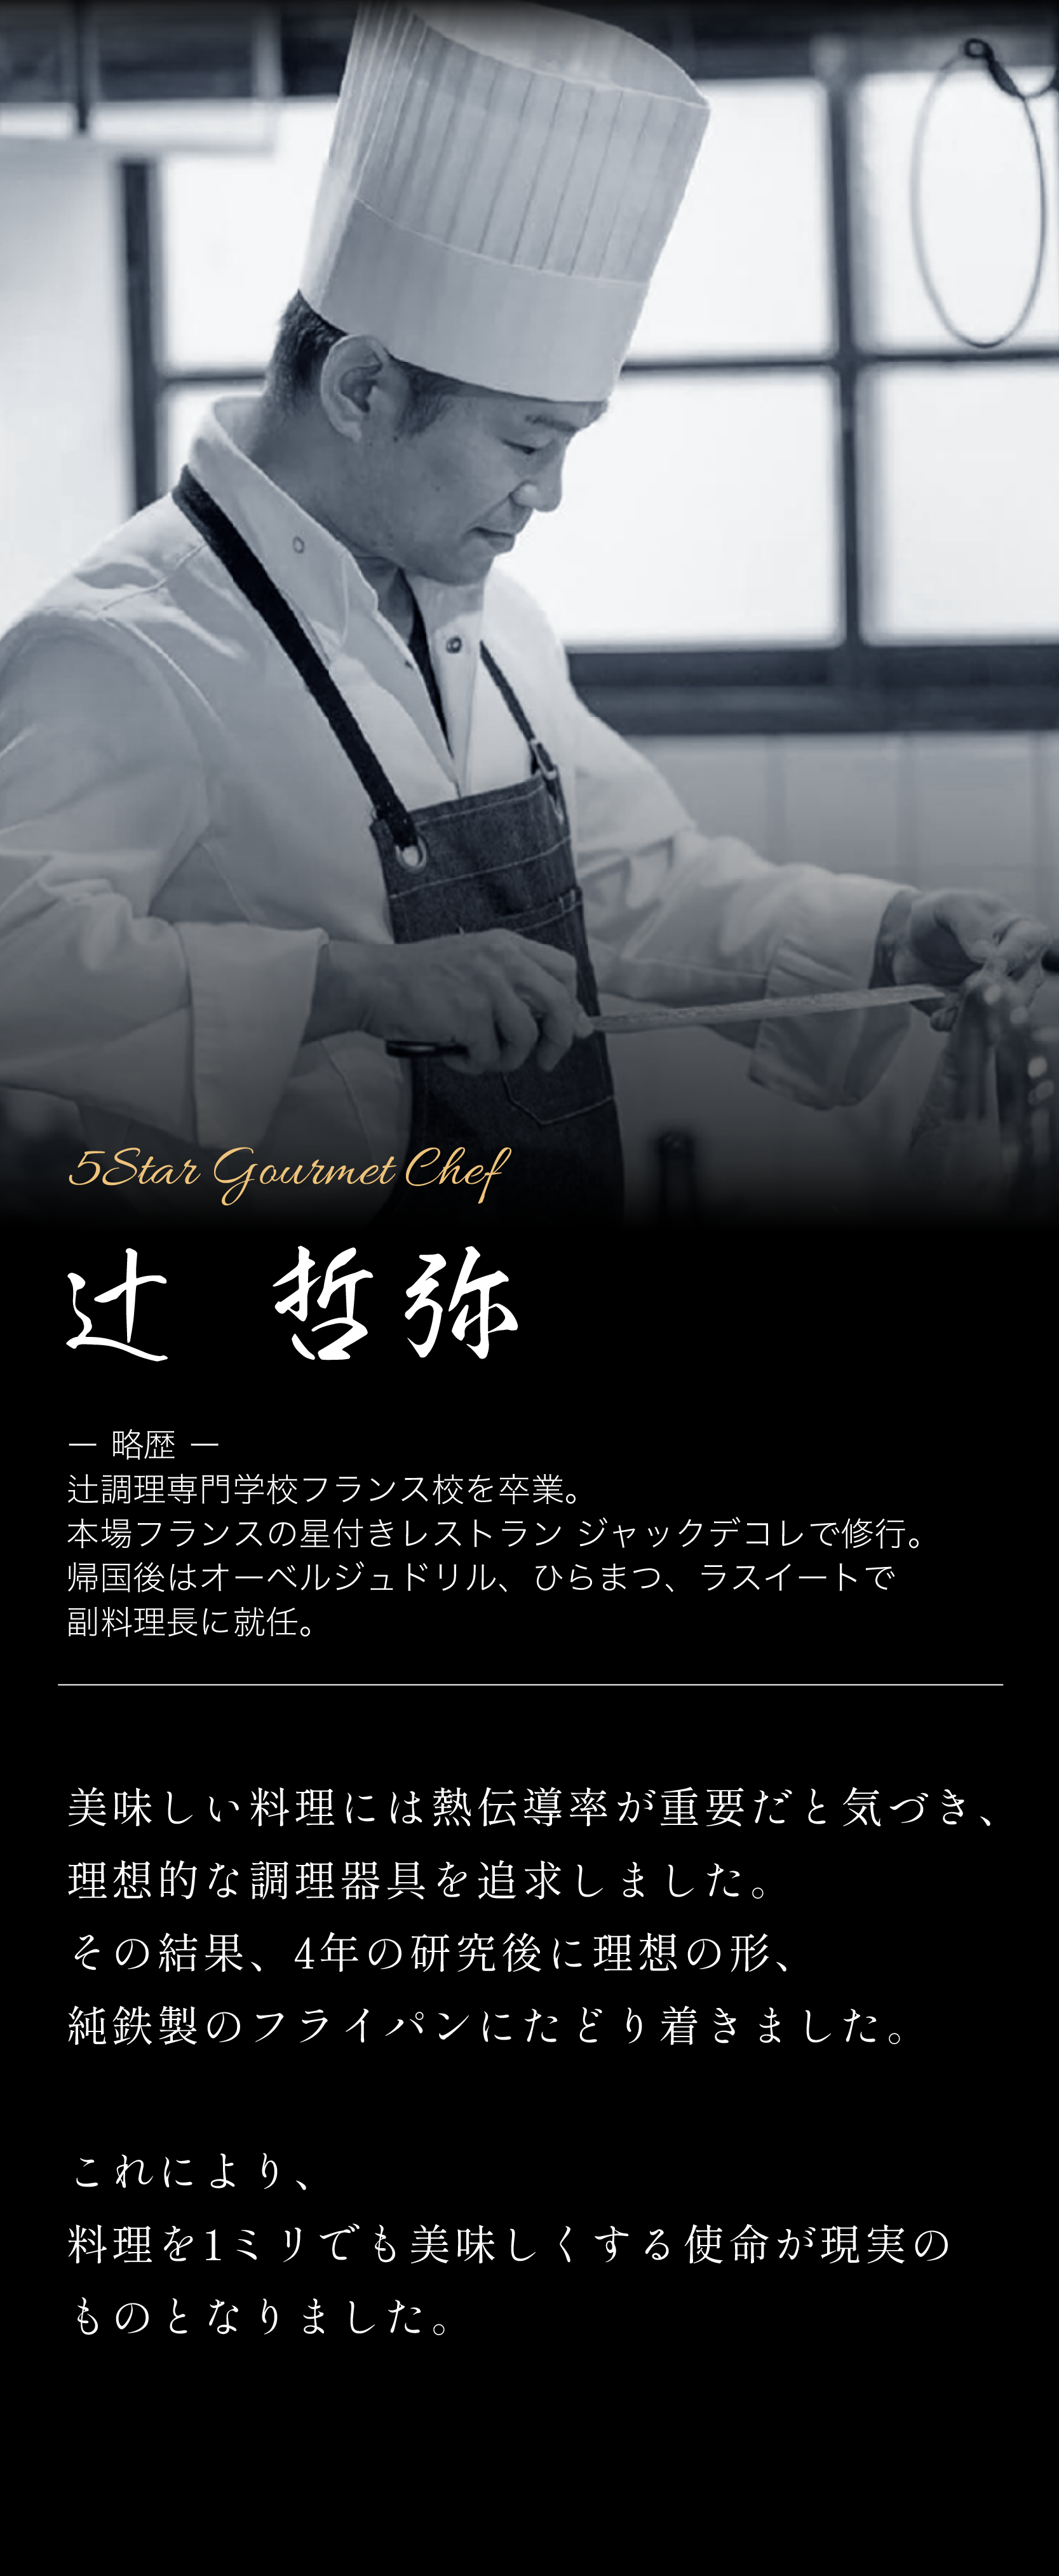 5Star Gourmet Store構成.png__PID:8d5b17ff-3dfe-4272-a5a5-8727384f601d